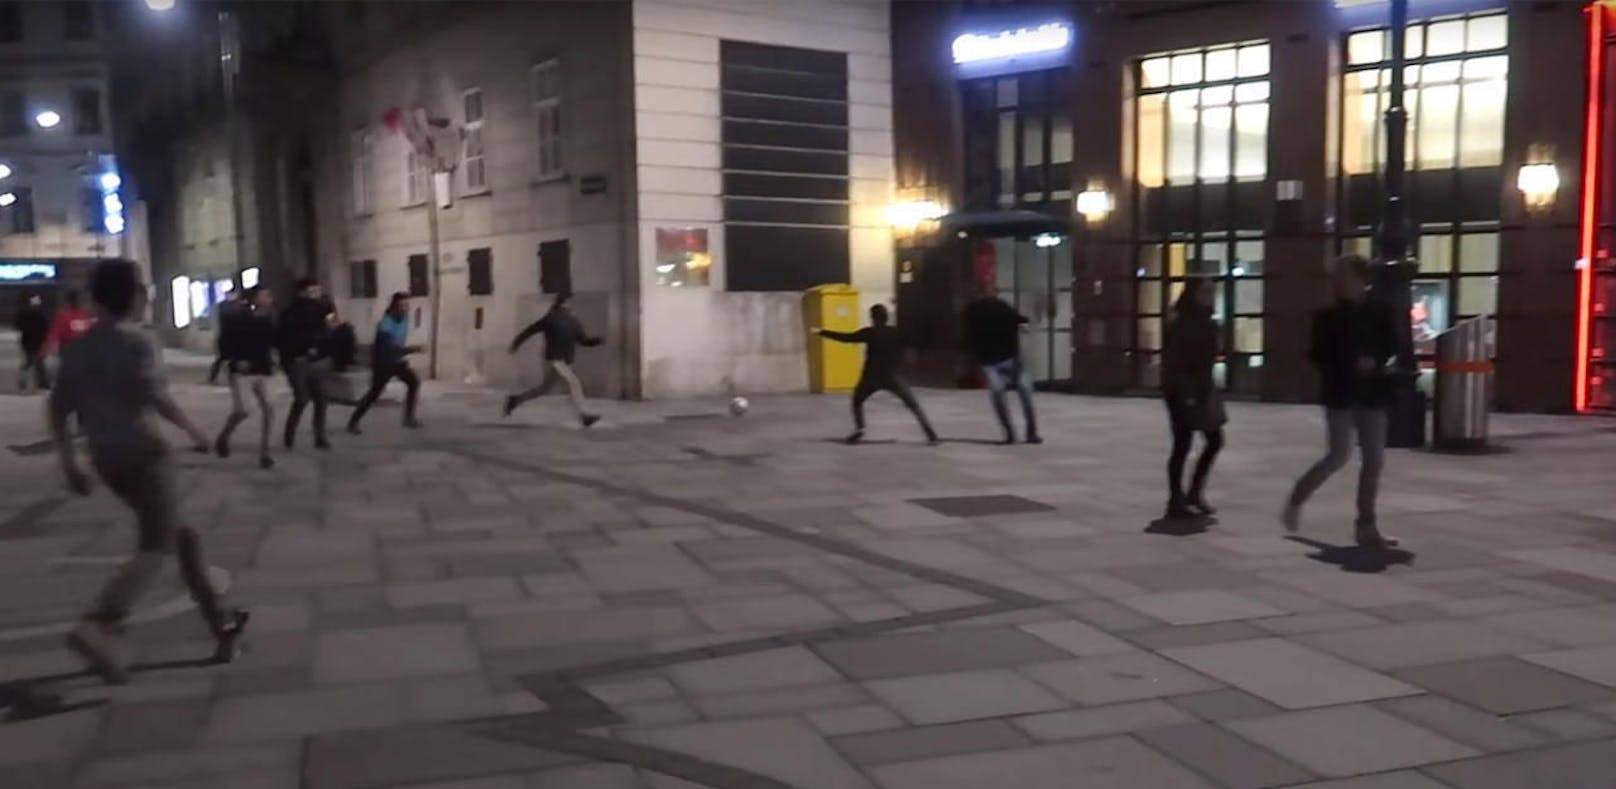 Polizei löst Fußballspiel am Stephansplatz auf